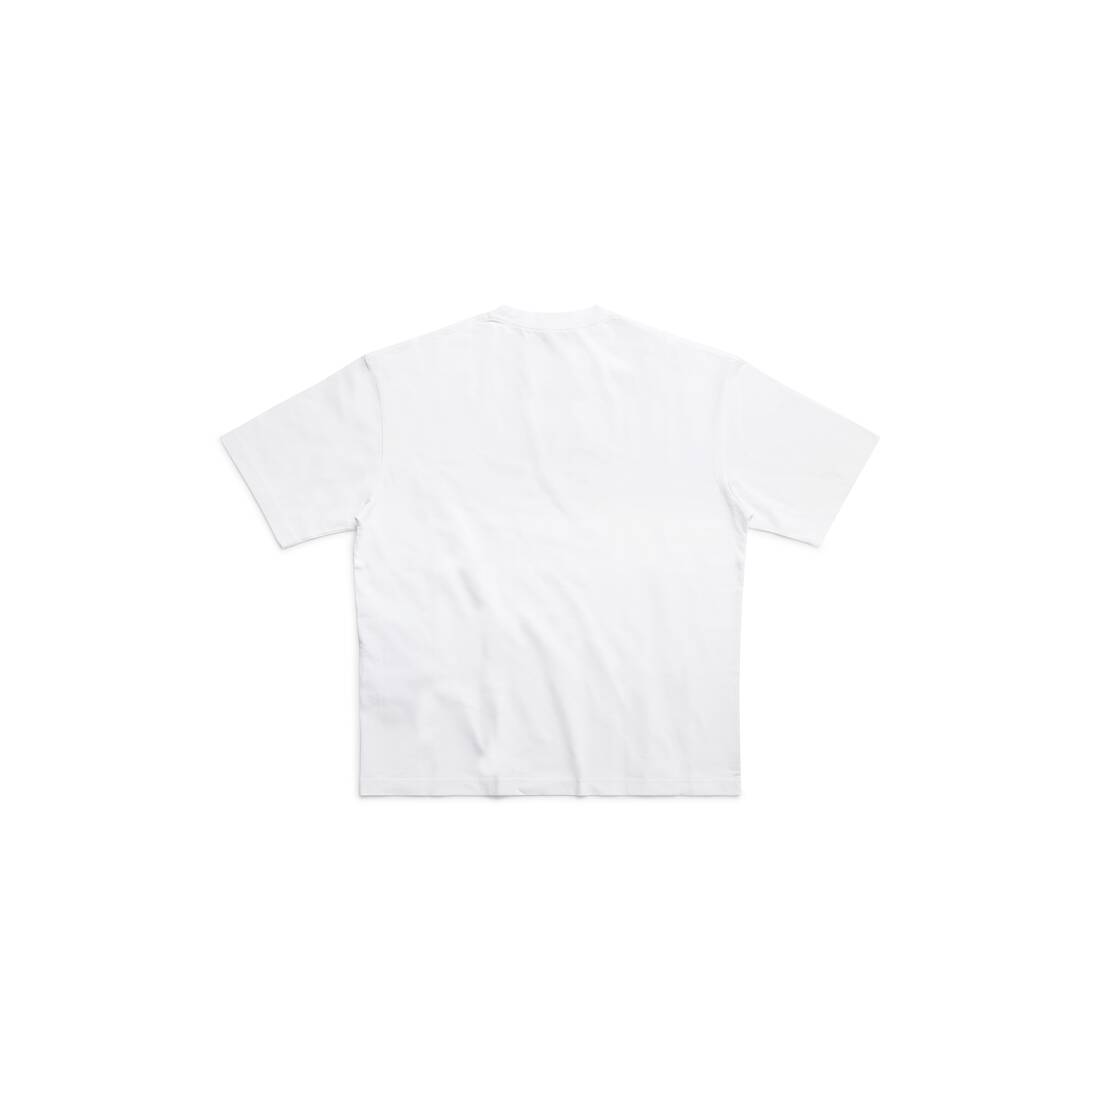 Men's Cities Paris T-shirt Medium Fit in White